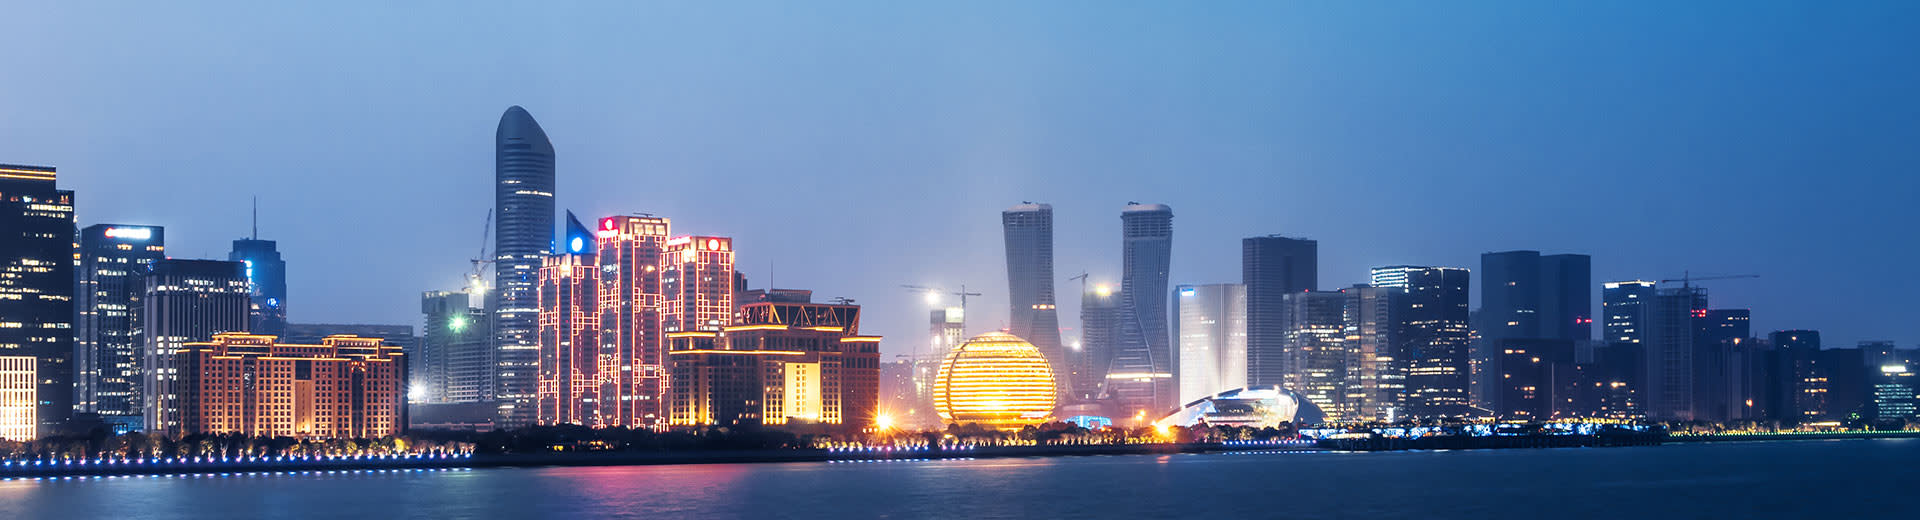 Un éventail scintillant de gratte-ciel illumine le ciel nocturne à Hangzhou.